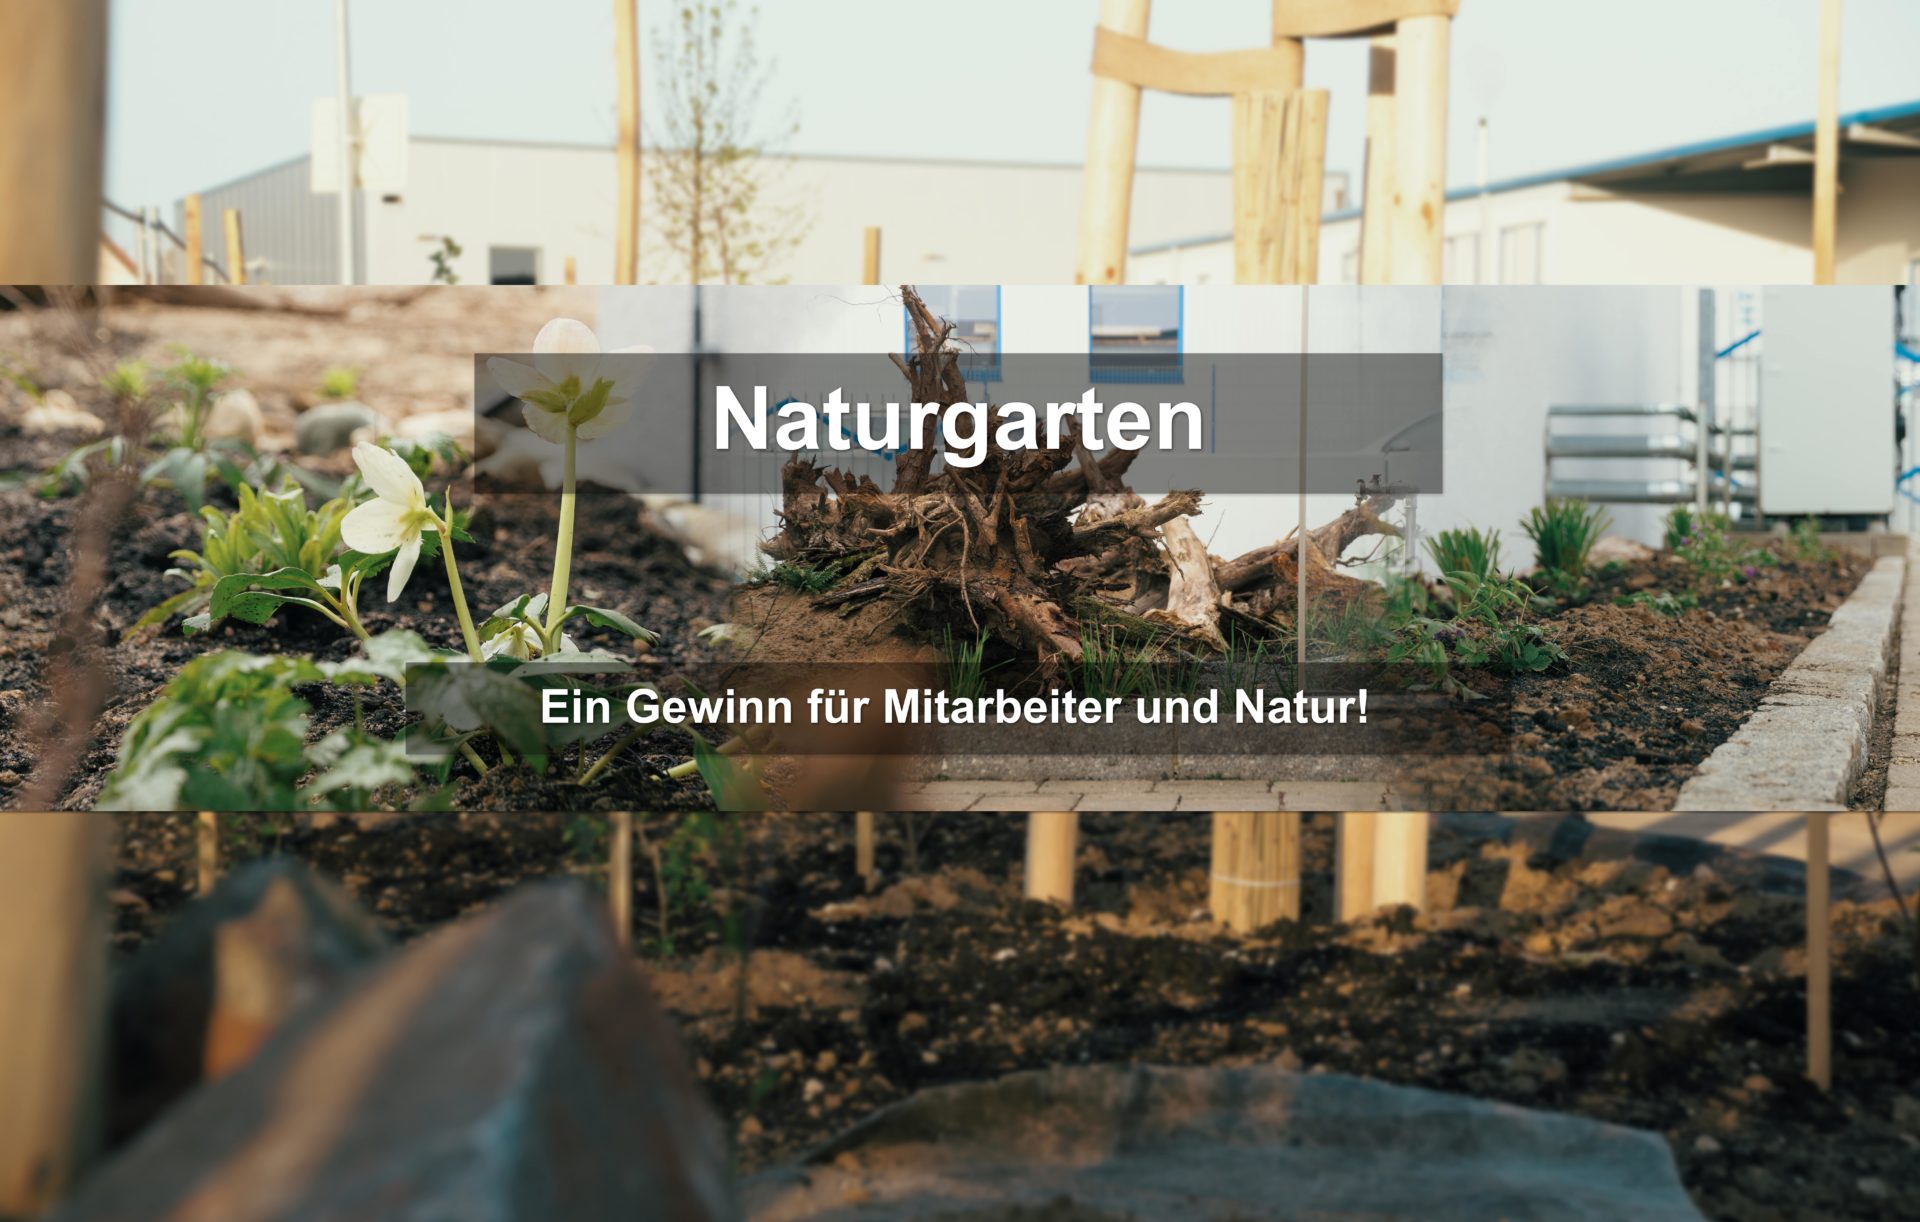 Naturgarten – Ein Gewinn für Mitarbeiter und Natur!